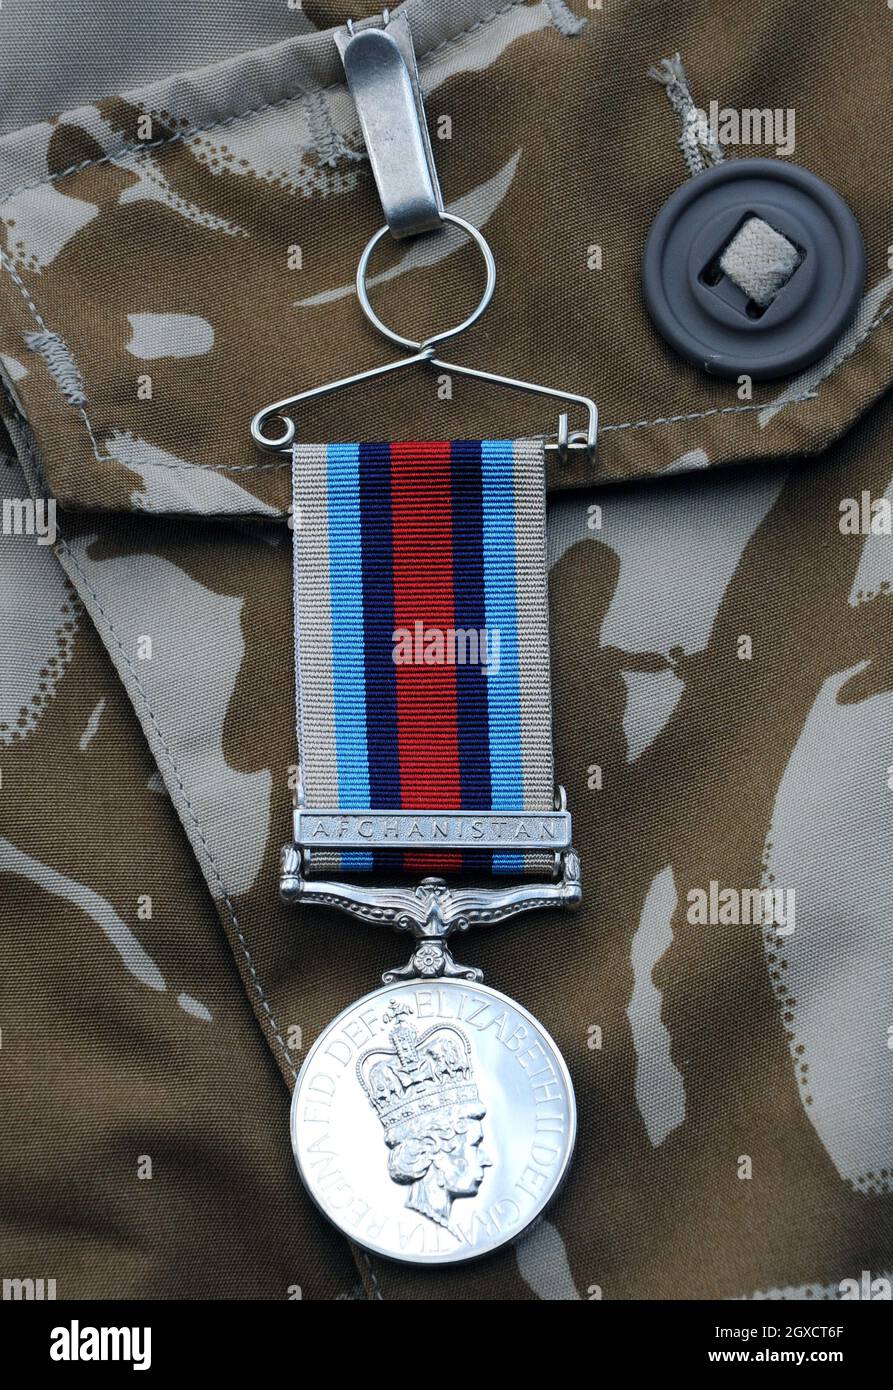 Eine Wahlkampfmedaille für den Dienst in Afghanistan, die der Prinz von Wales den Mitgliedern des 4. Bataillons, dem Mercischen Regiment im Clarence House, überreicht hat. Stockfoto